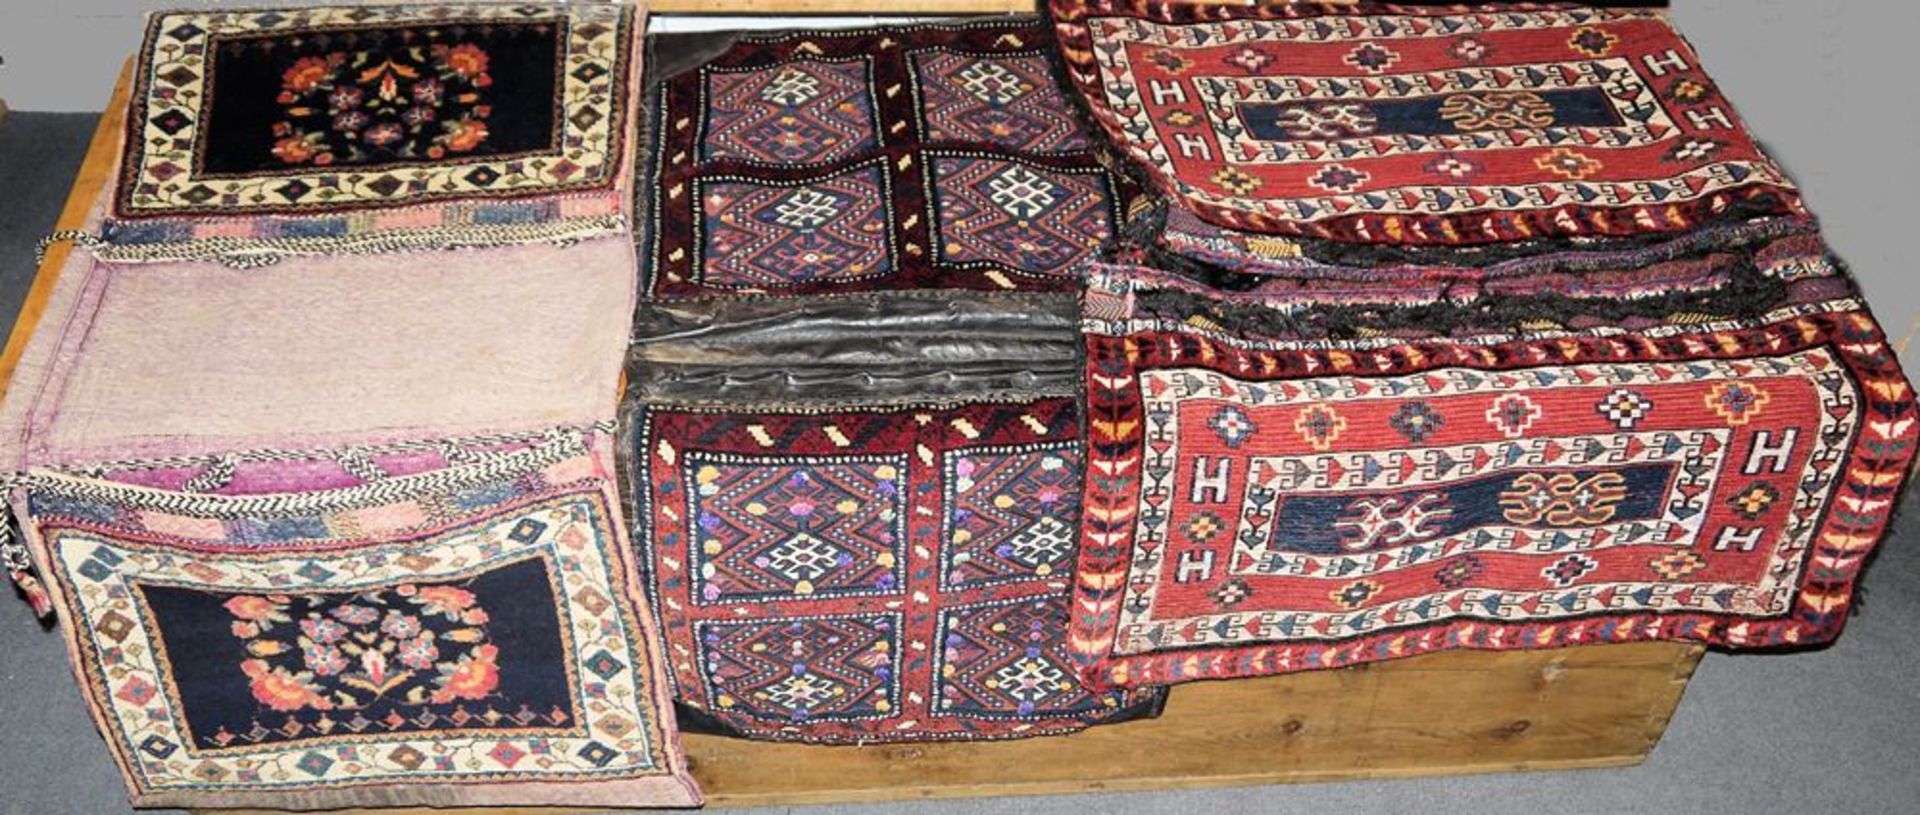 Neun große Kelim-Satteltaschen und Taschen, z.T antik, Iran-Türkei, ab 19. Jh.